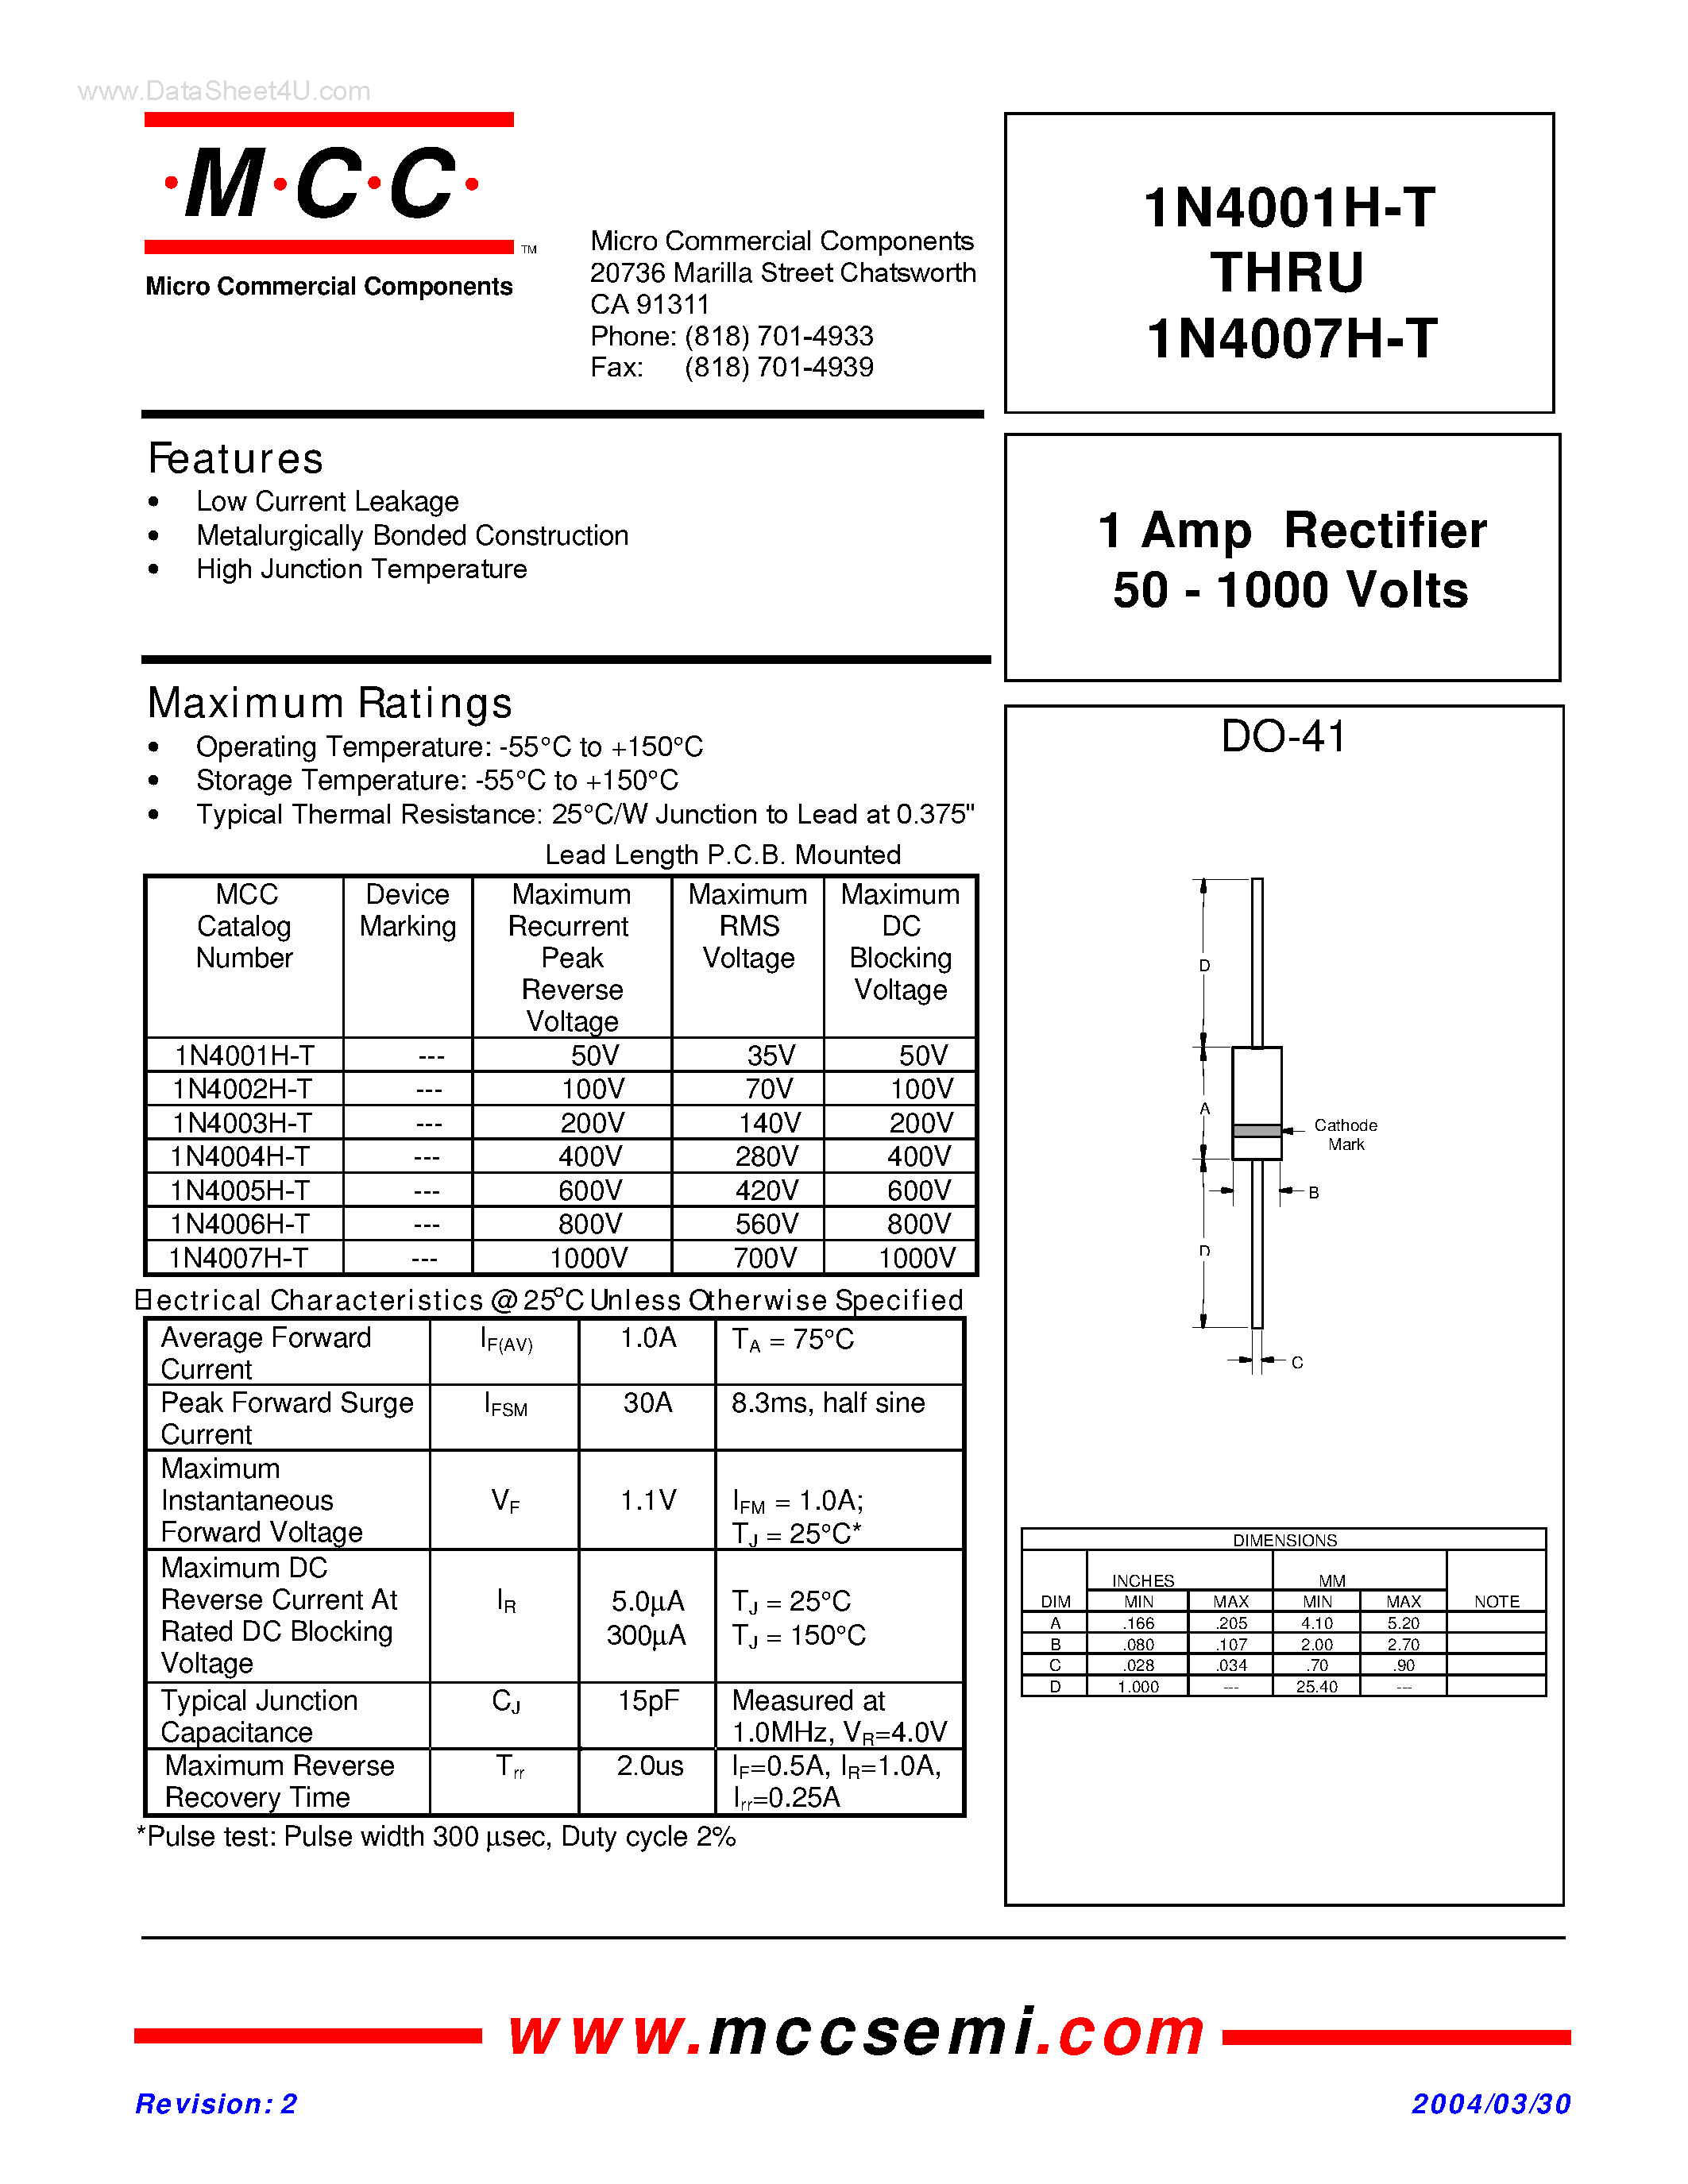 Datasheet 1N4001H-T - (1N4001H-T - 1N4007H-T) 1 Amp Rectifier page 1